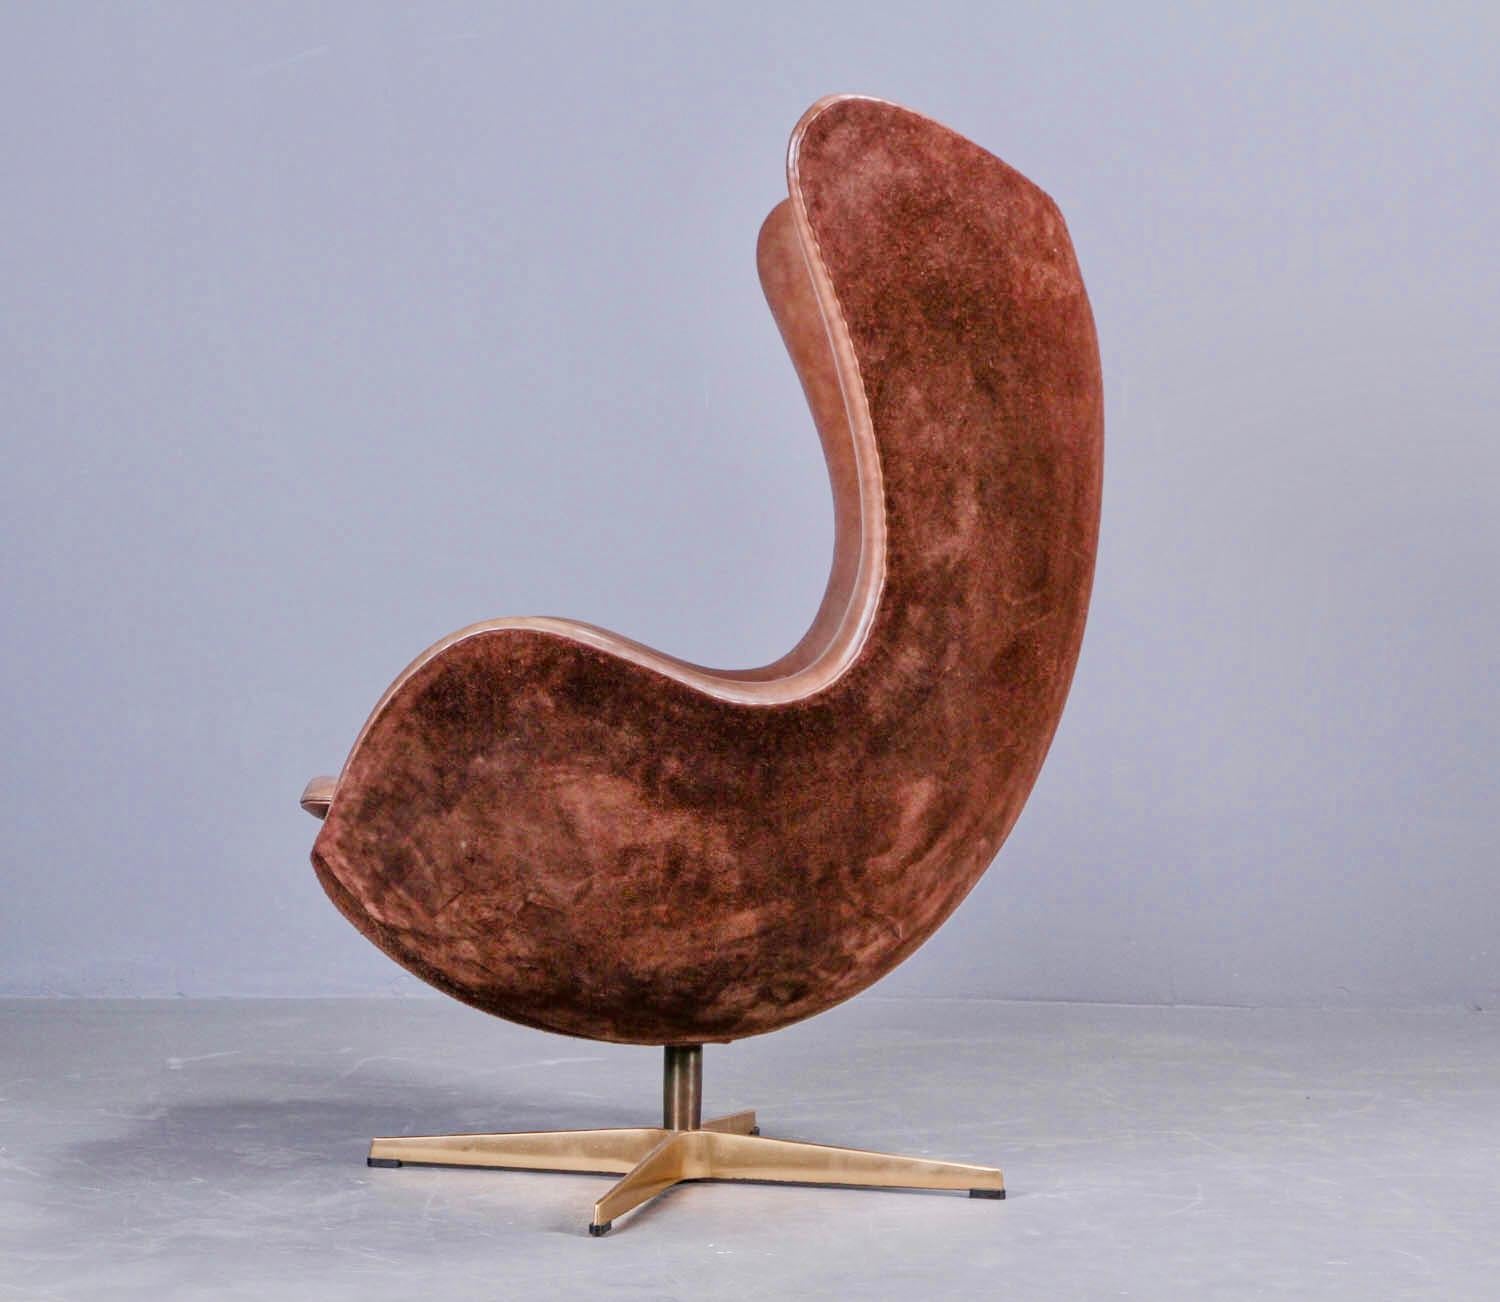 Arne Jacobsen 'Golden Egg Chair' von Fritz Hansen in Dänemark, nummerierte Ausgabe (Dänisch)